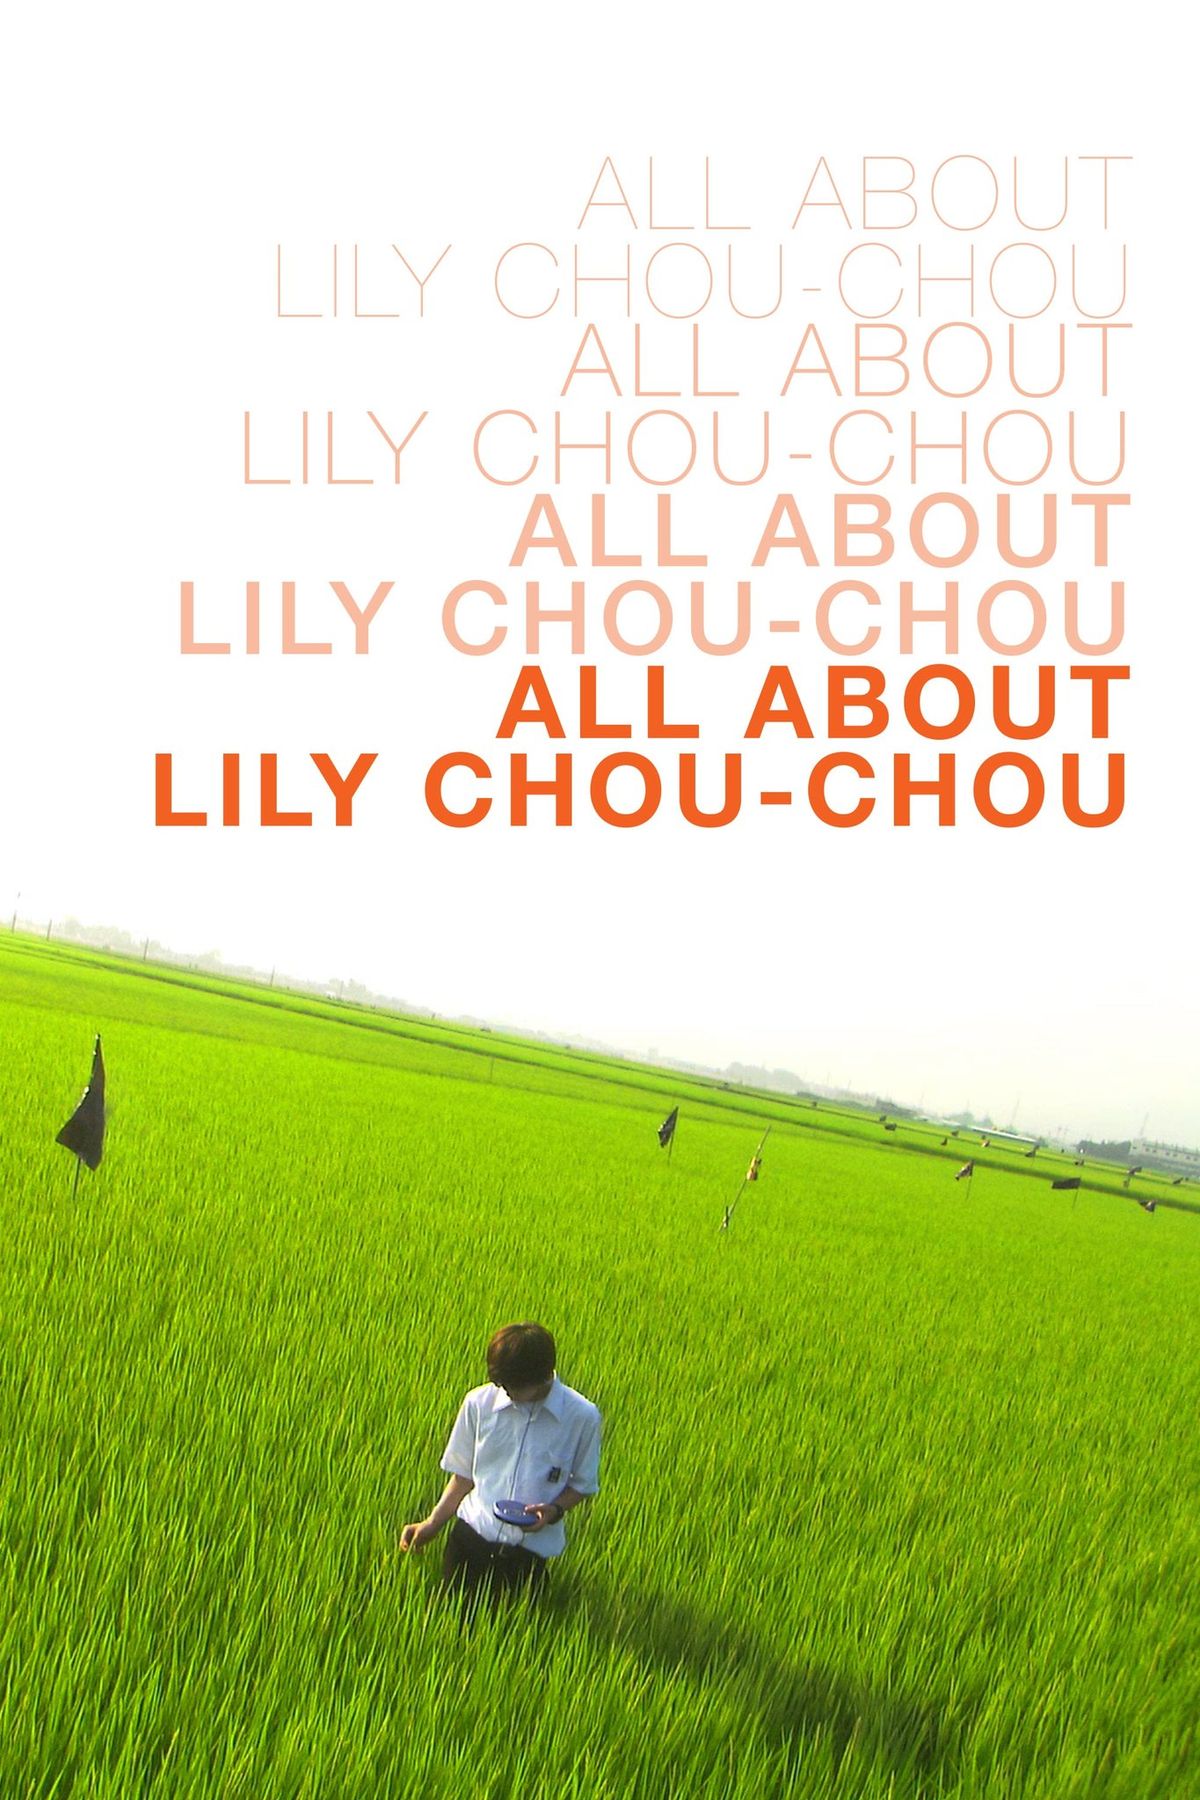 ALL ABOUT LILY CHOU CHOU (2001) at PhilaMOCA